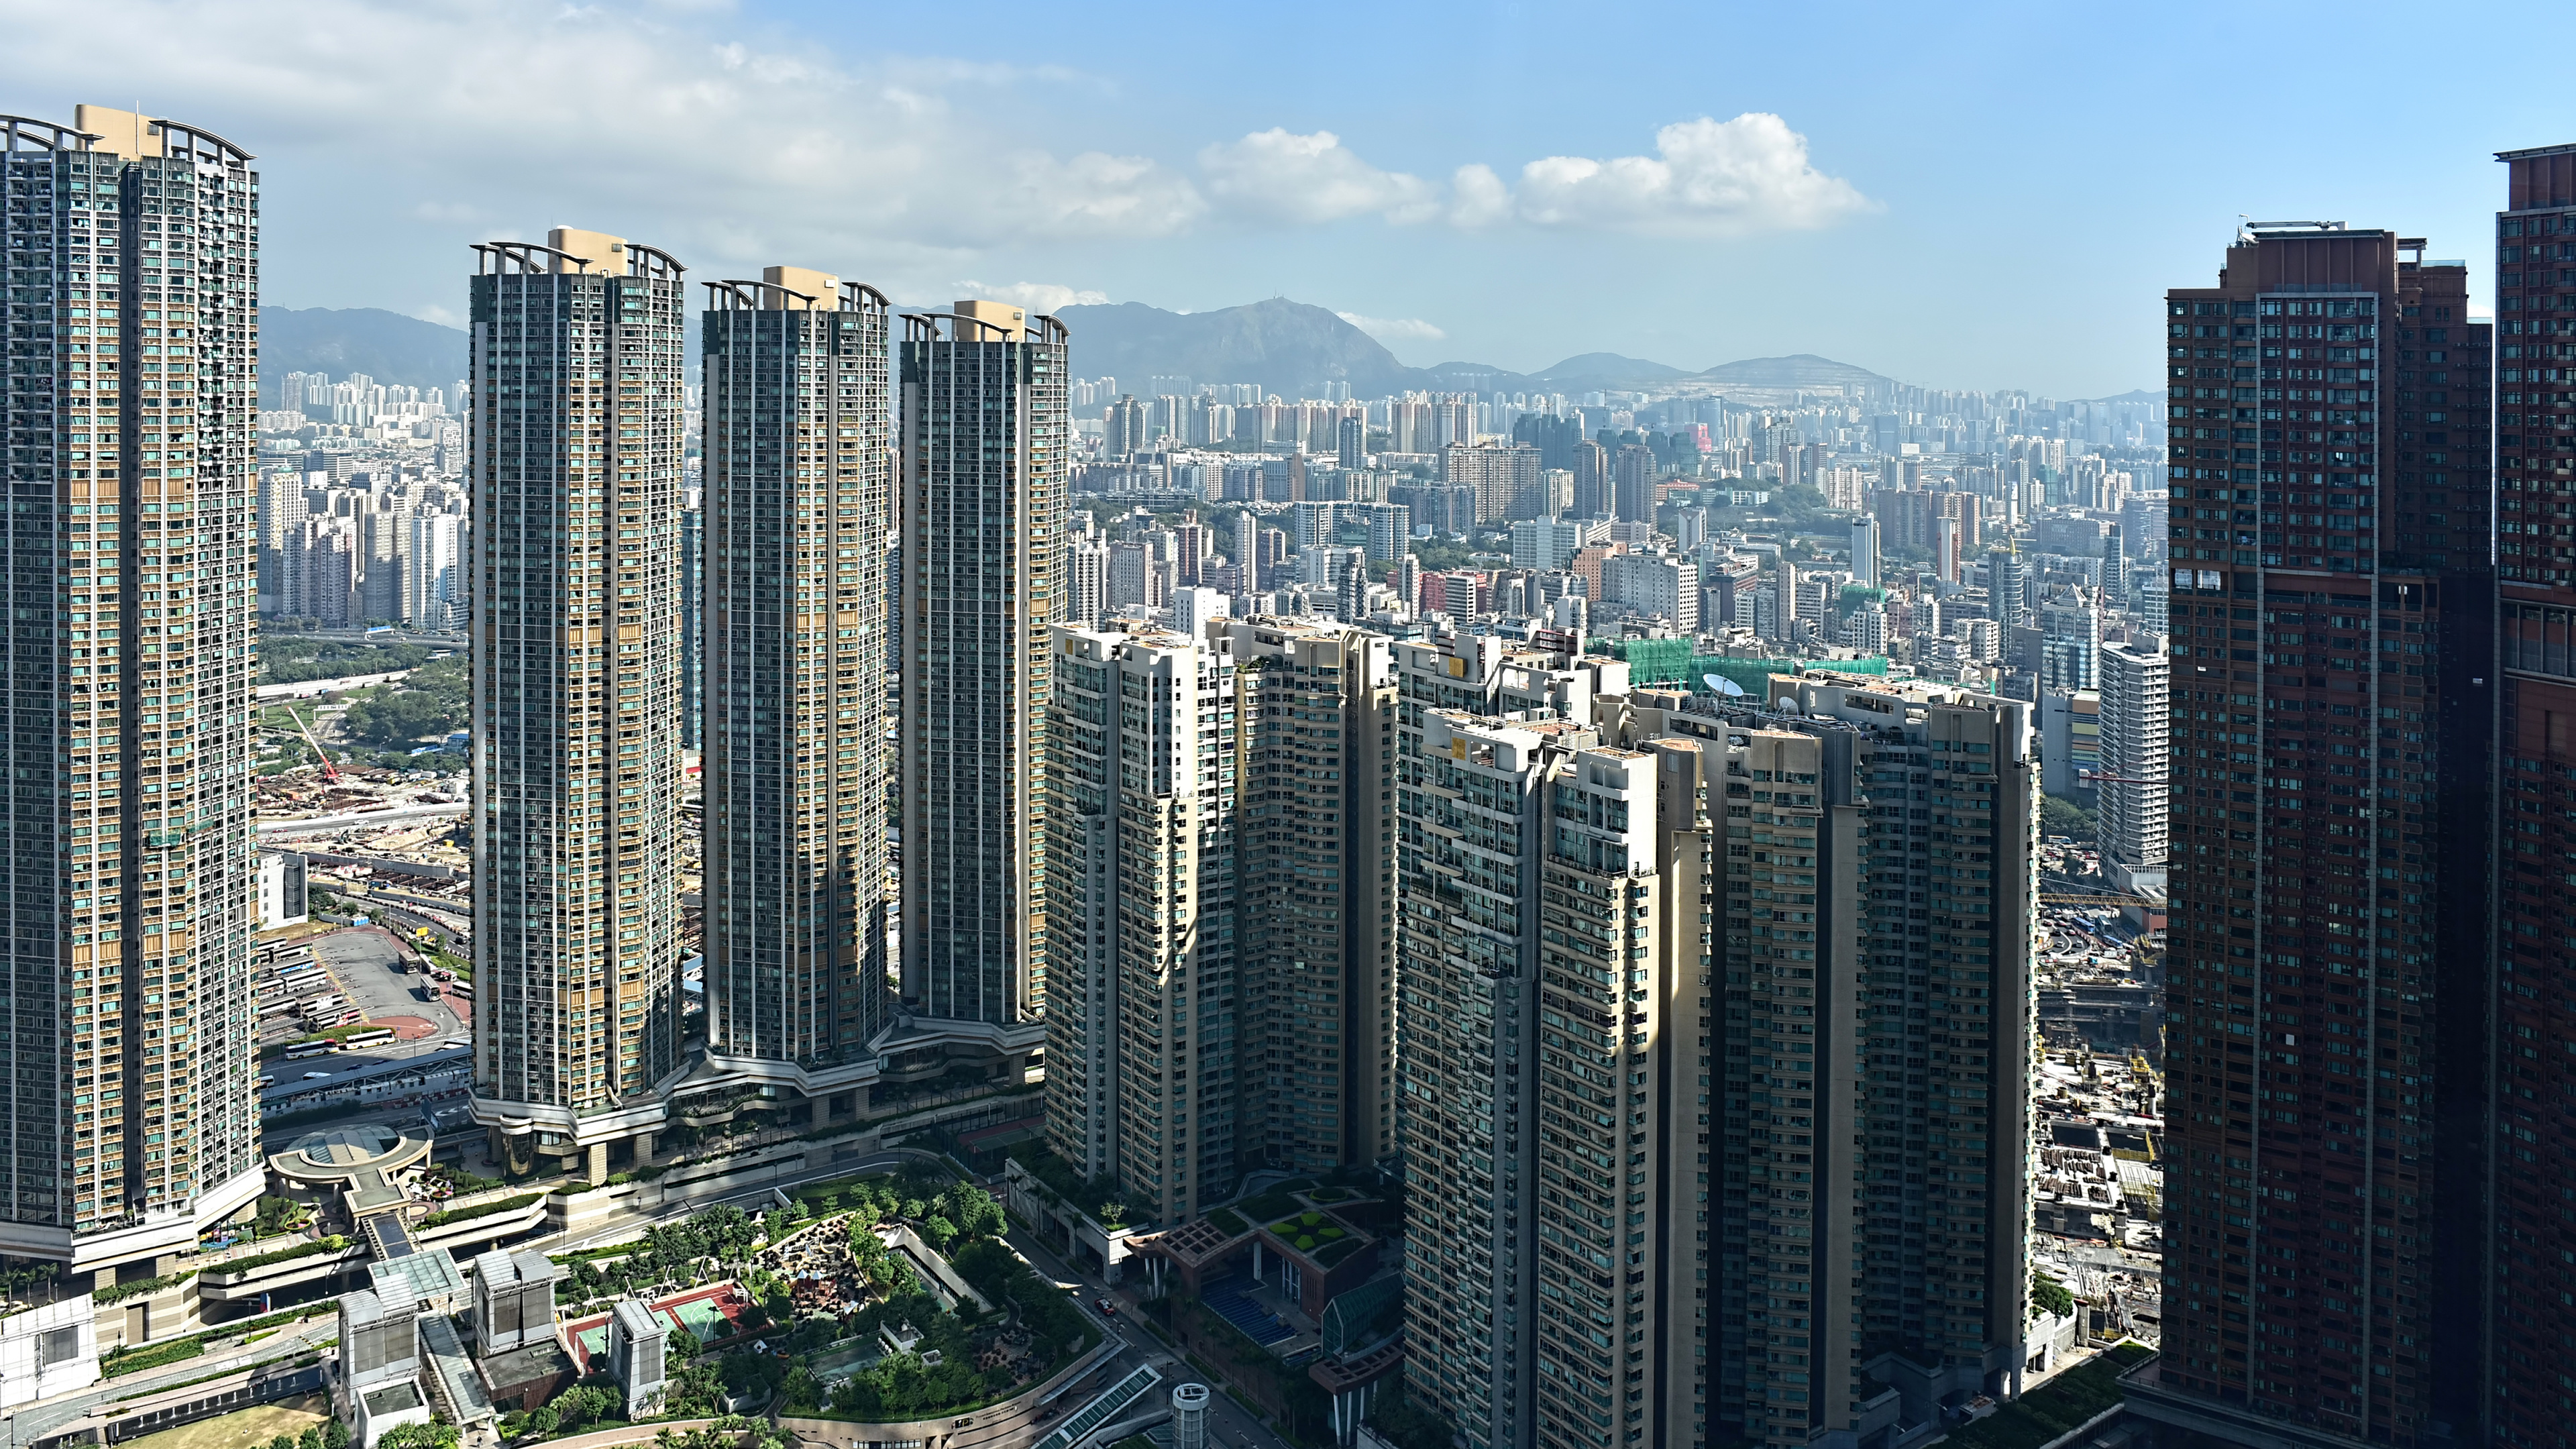 香港, 城市, 大都会, 城市景观, 塔块 壁纸 3840x2160 允许